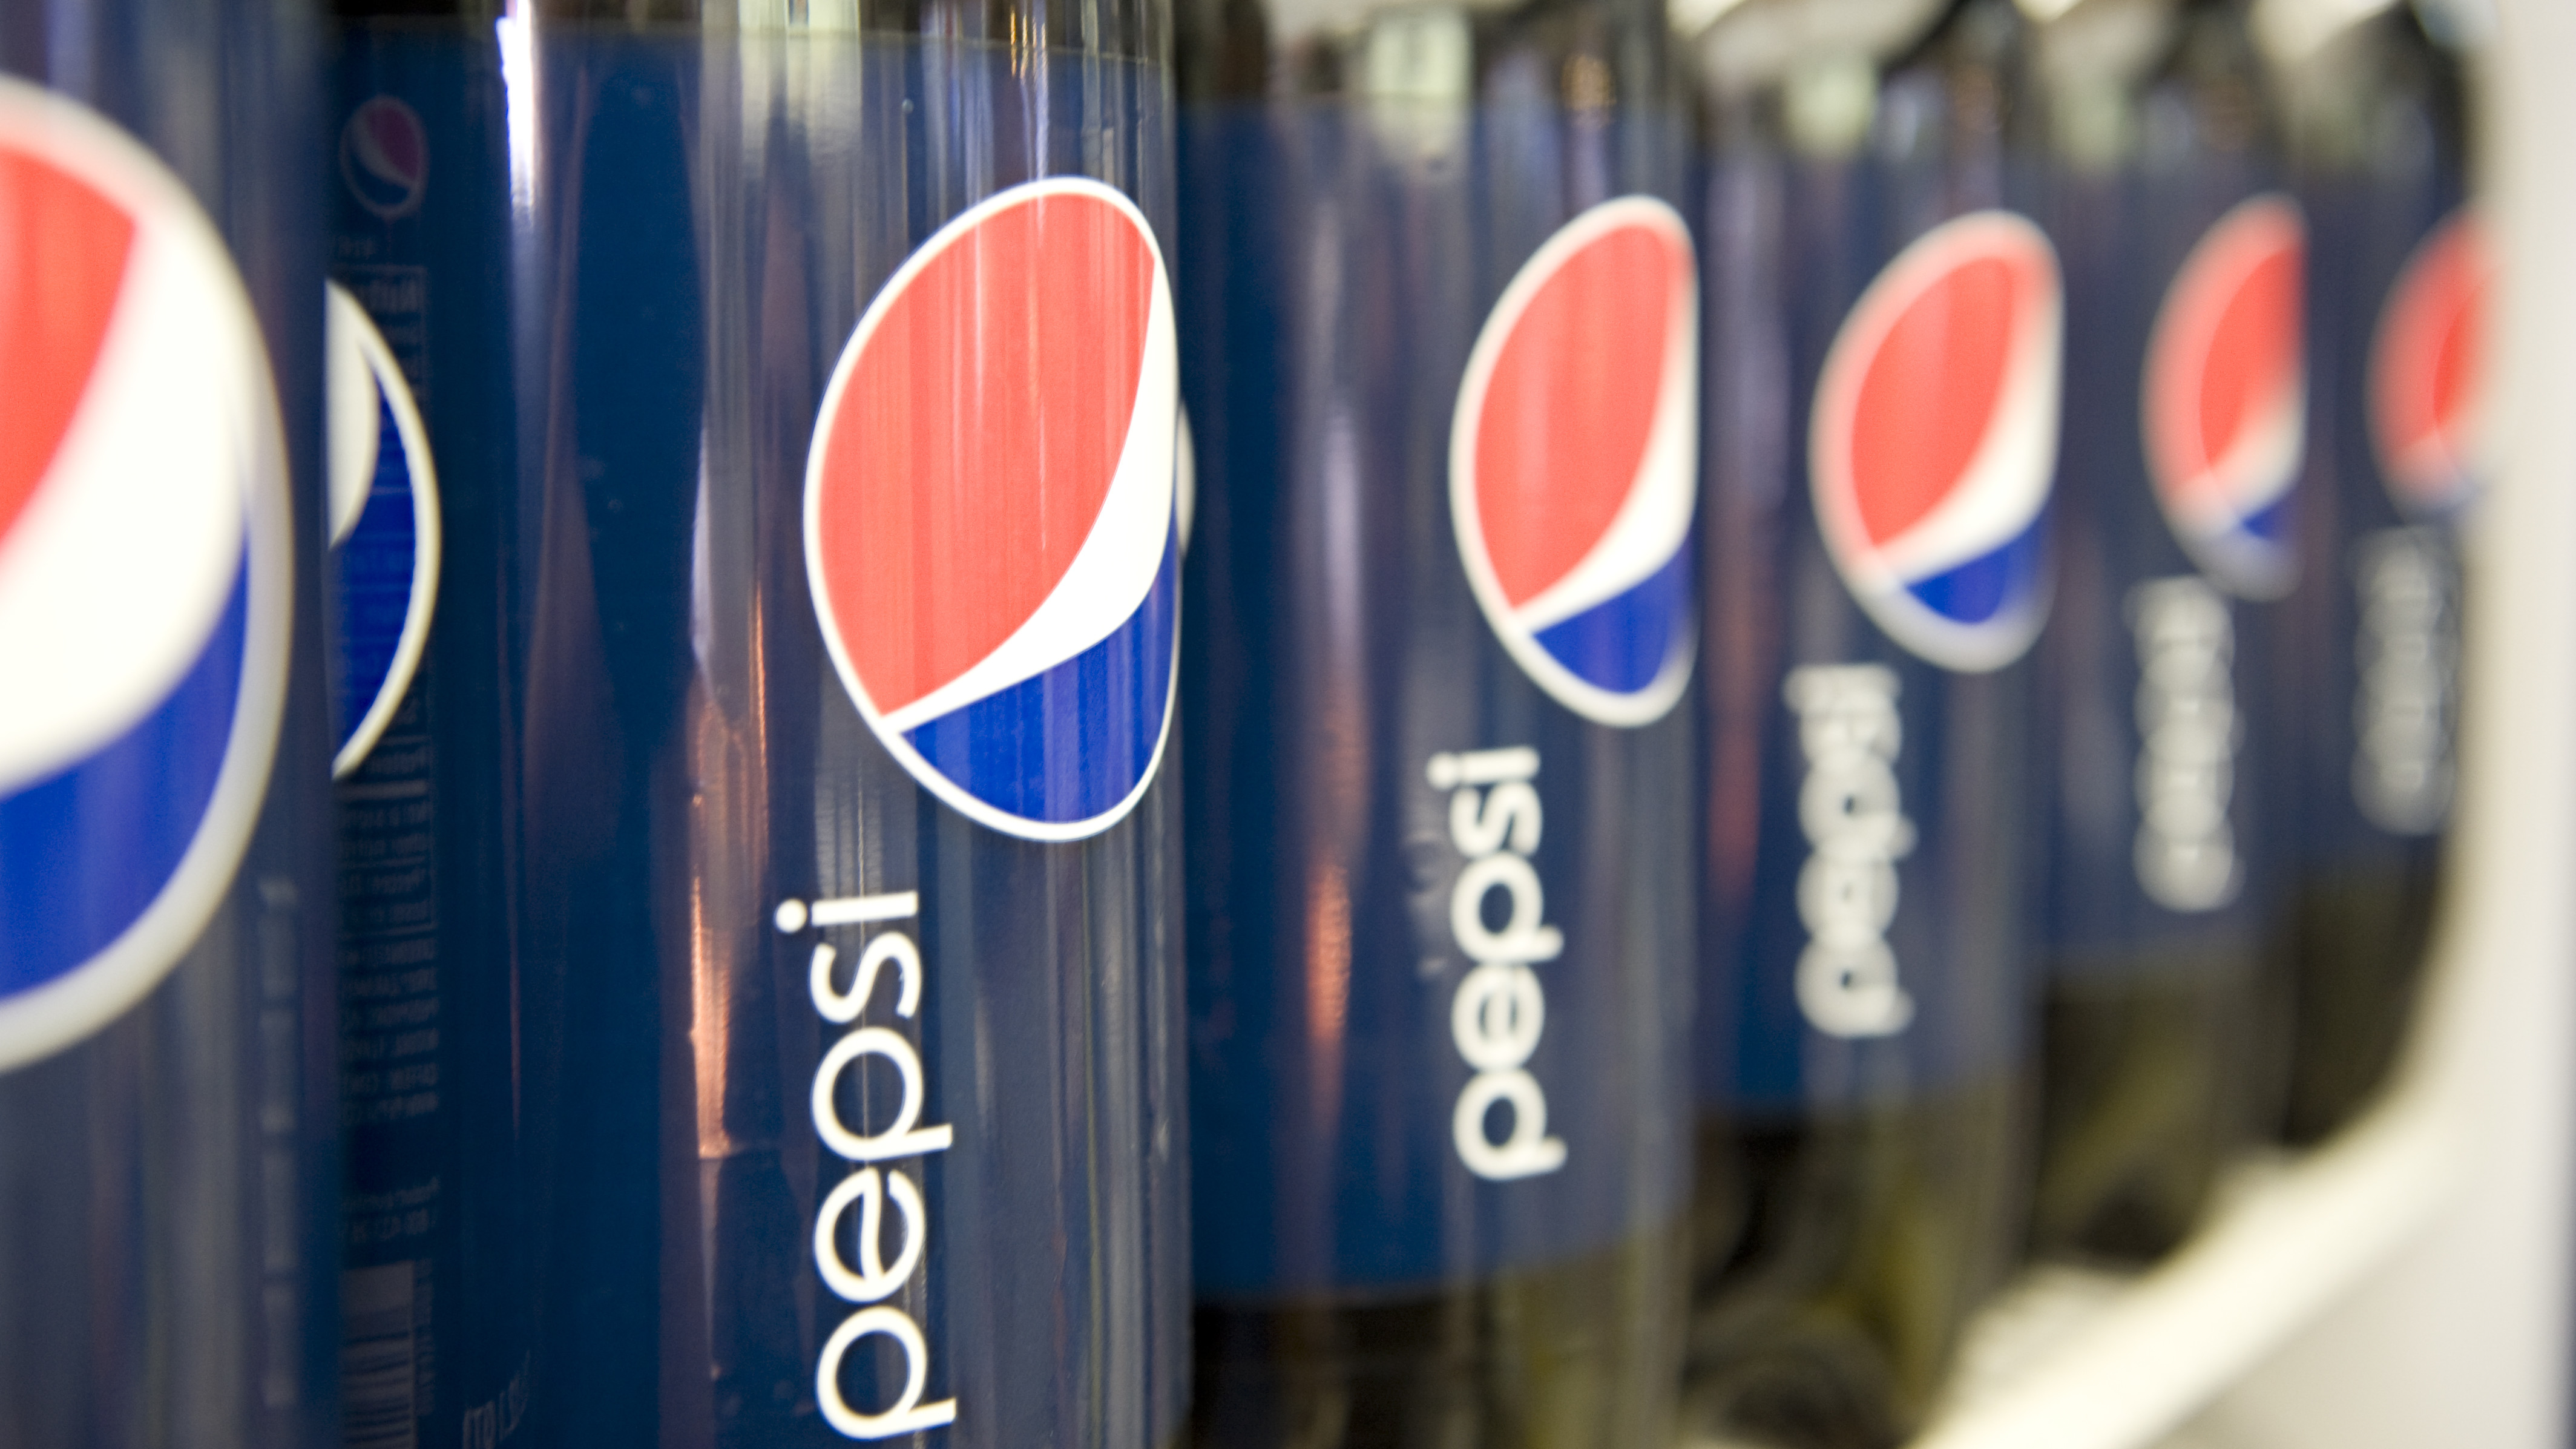 Nå kommer Pepsi med deres første smarttelefon. Spørsmålet er hvorfor?